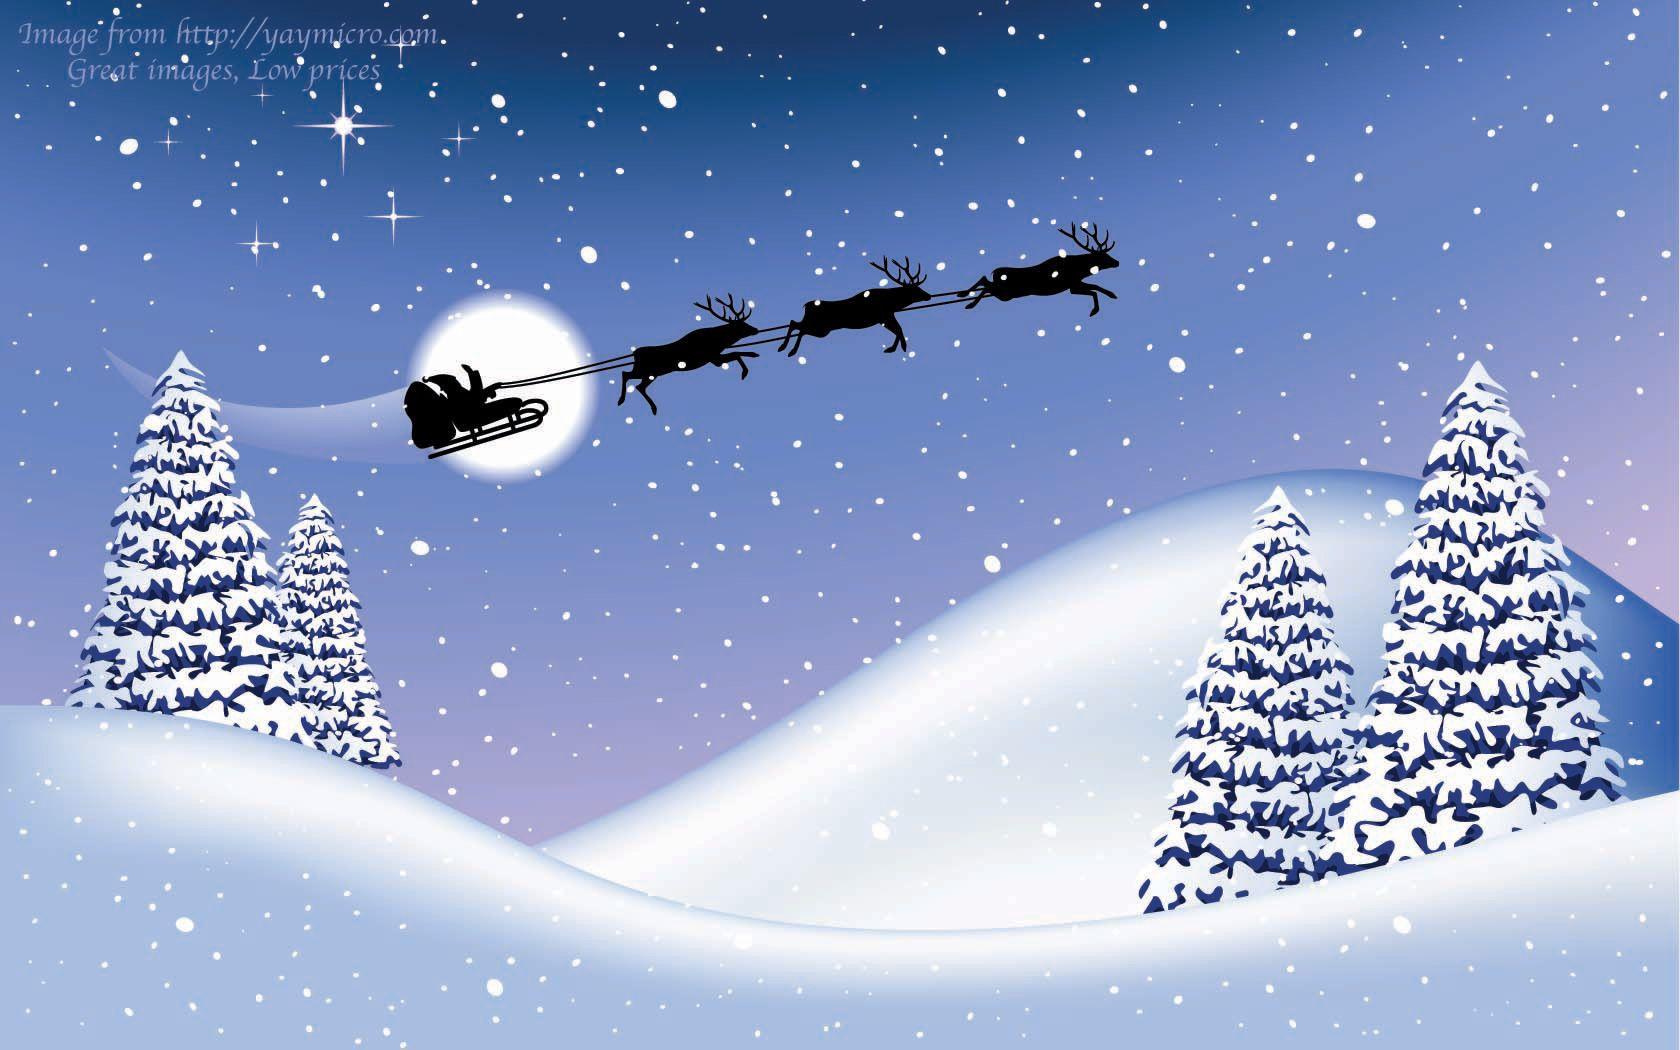 Free Animated Christmas Wallpaper for Desktop. Christmas